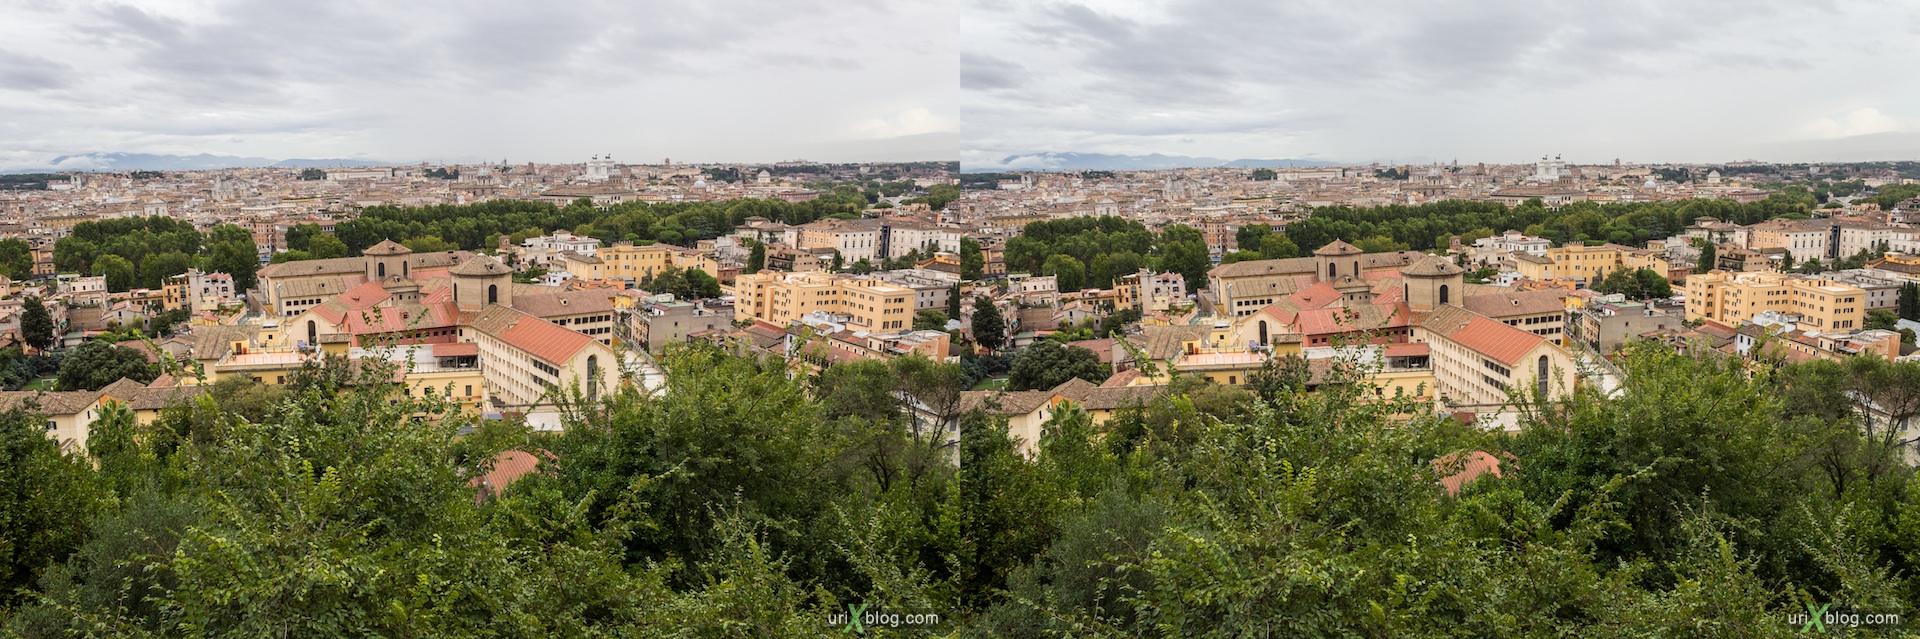 2012, Маяк Gianicolo, улица Passeggiata del Gianicolo, панорама, смотровая площадка, Рим, Италия, осень, 3D, перекрёстные стереопары, стерео, стереопара, стереопары